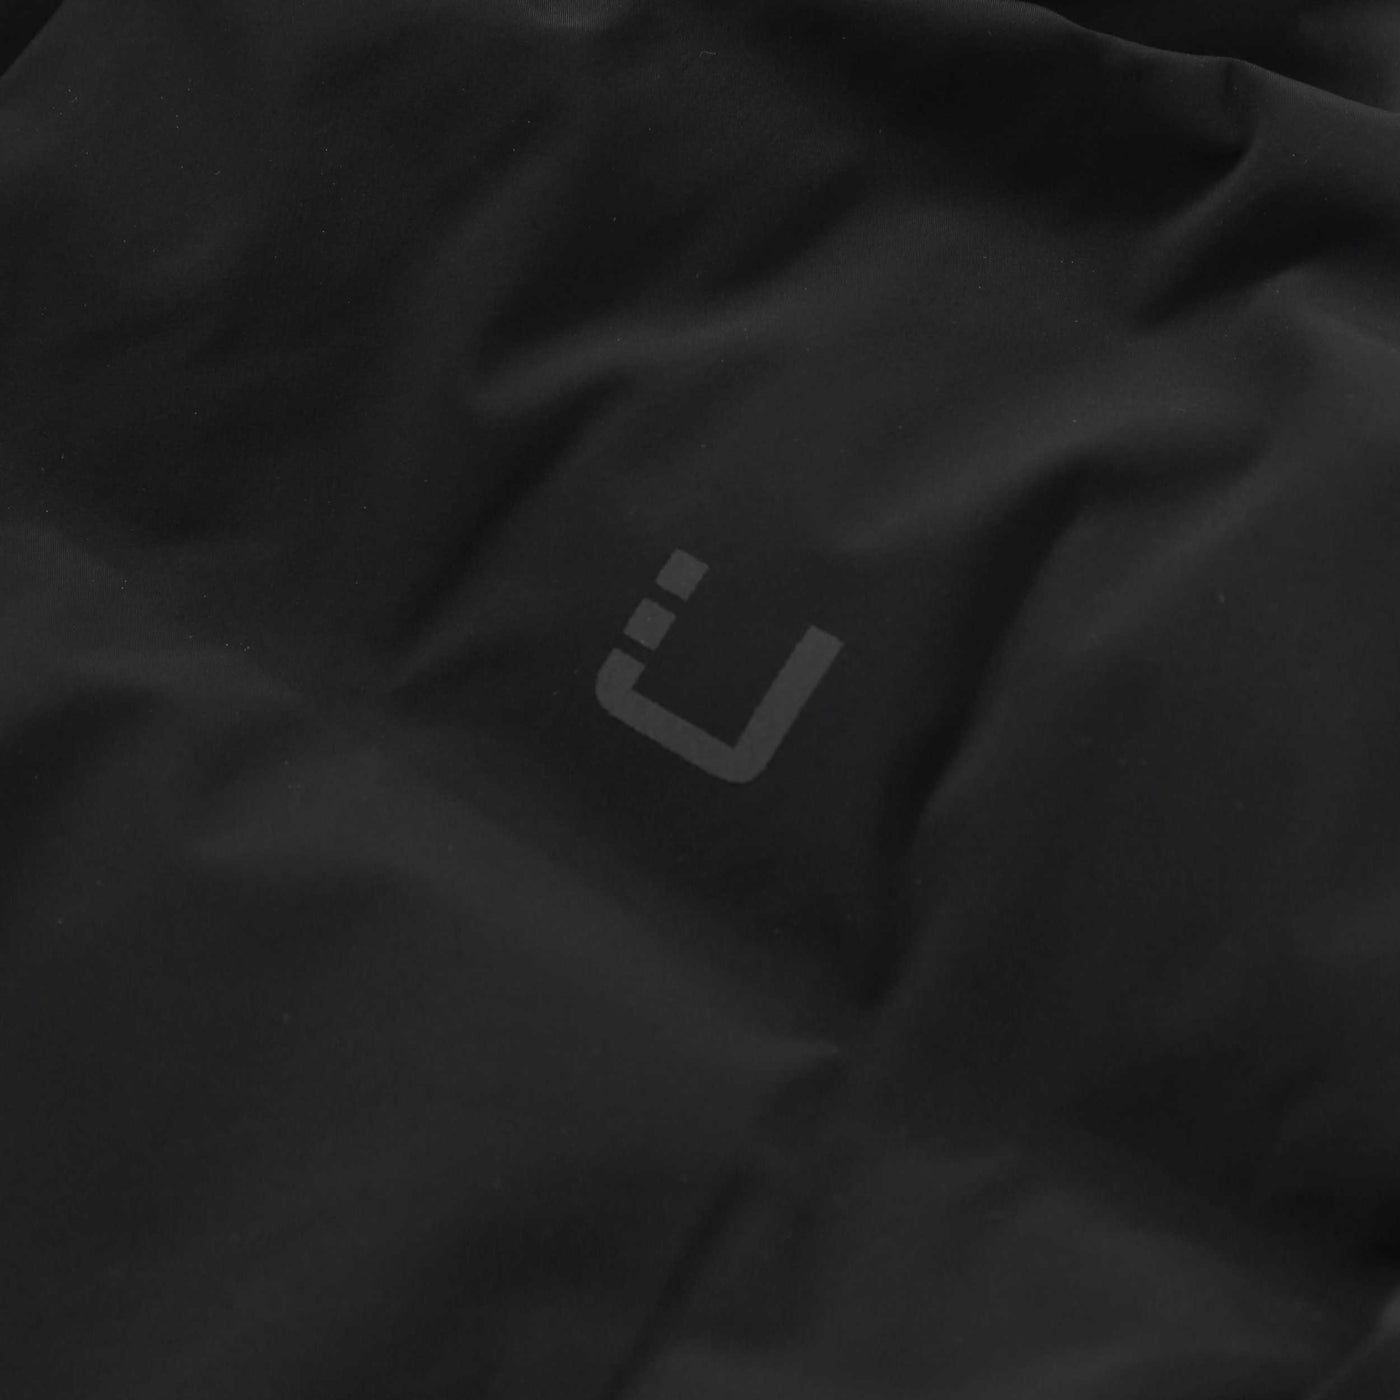 UBR Bolt Jacket in Black Logo